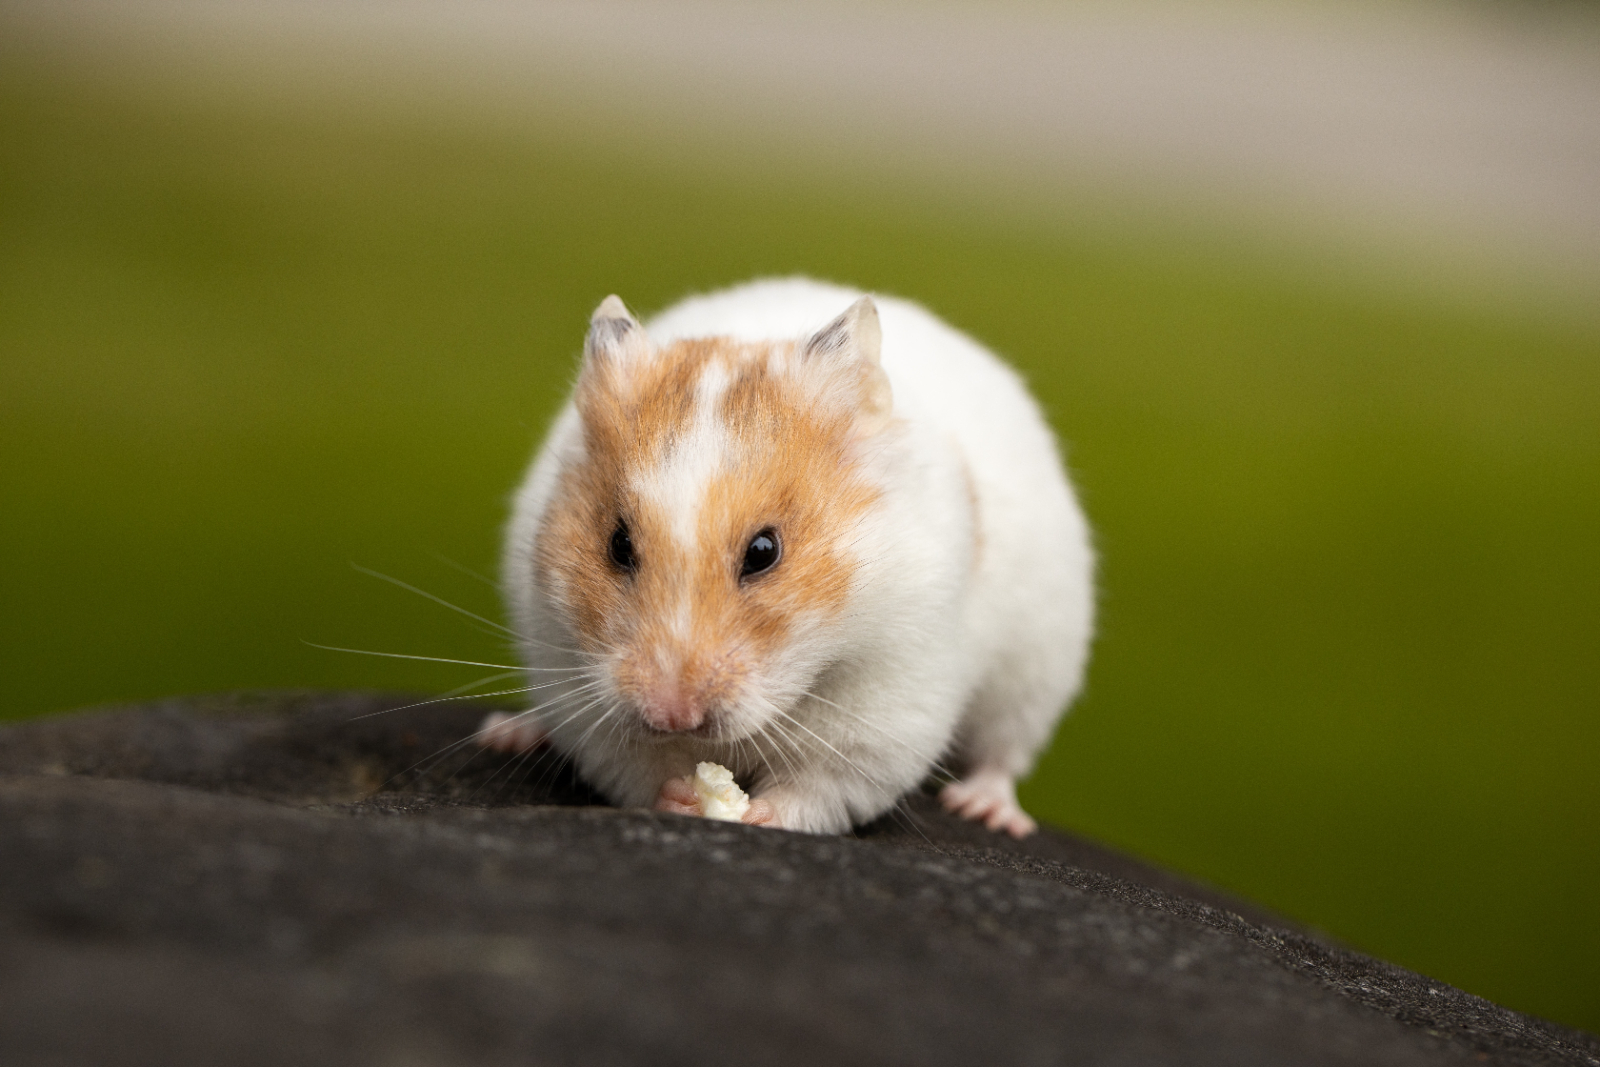 Dürfen Hamster Salat essen? Die Antwort ist nicht ganz einfach. Tiier